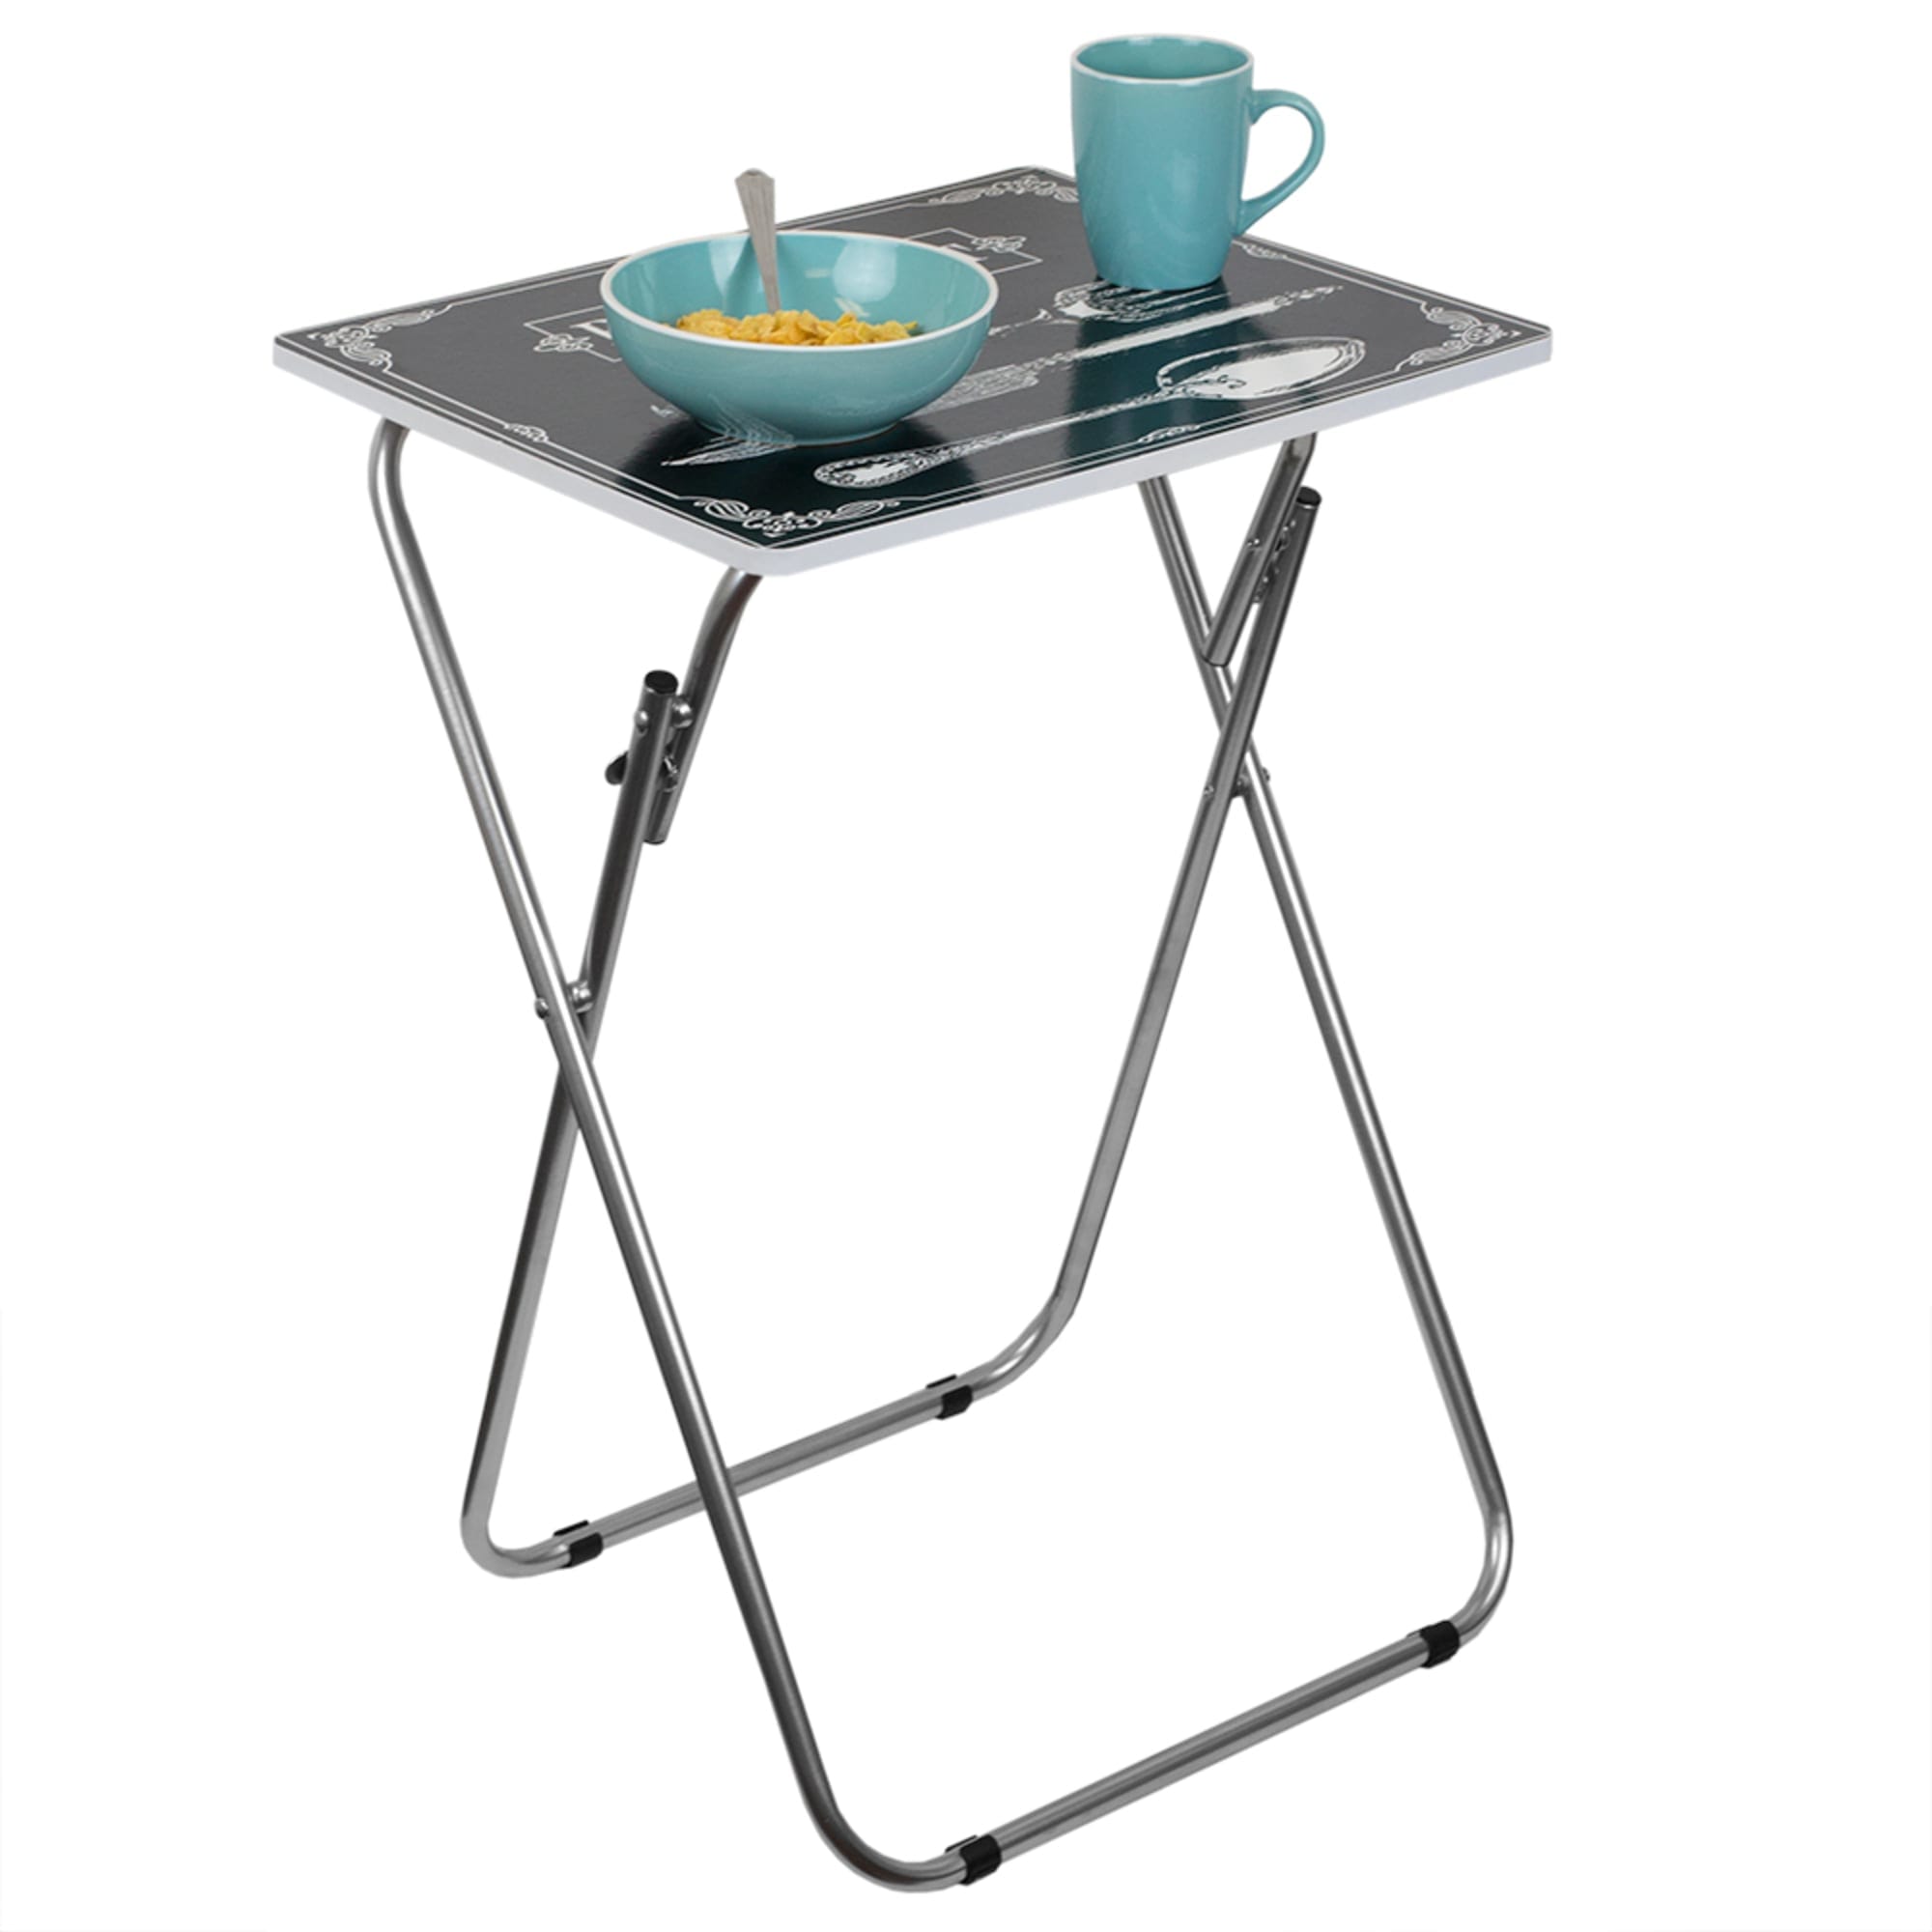 Home Basics Bon Appetit Multi-Purpose Folding Table, Black $15.00 EACH, CASE PACK OF 6